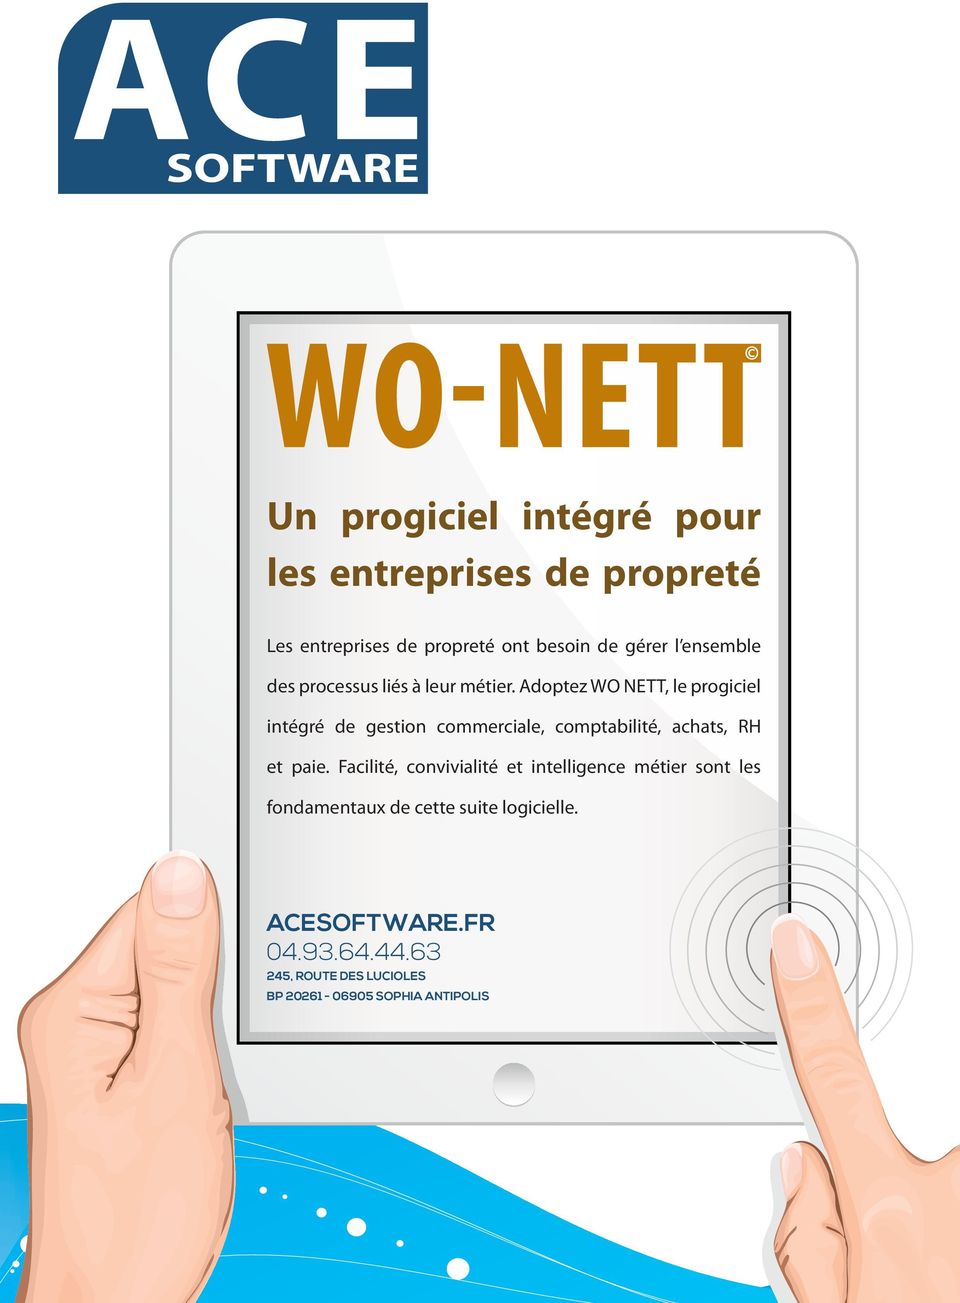 Adoptez WO NETT, le progiciel intégré de gestion commerciale, comptabilité, achats, RH et paie.